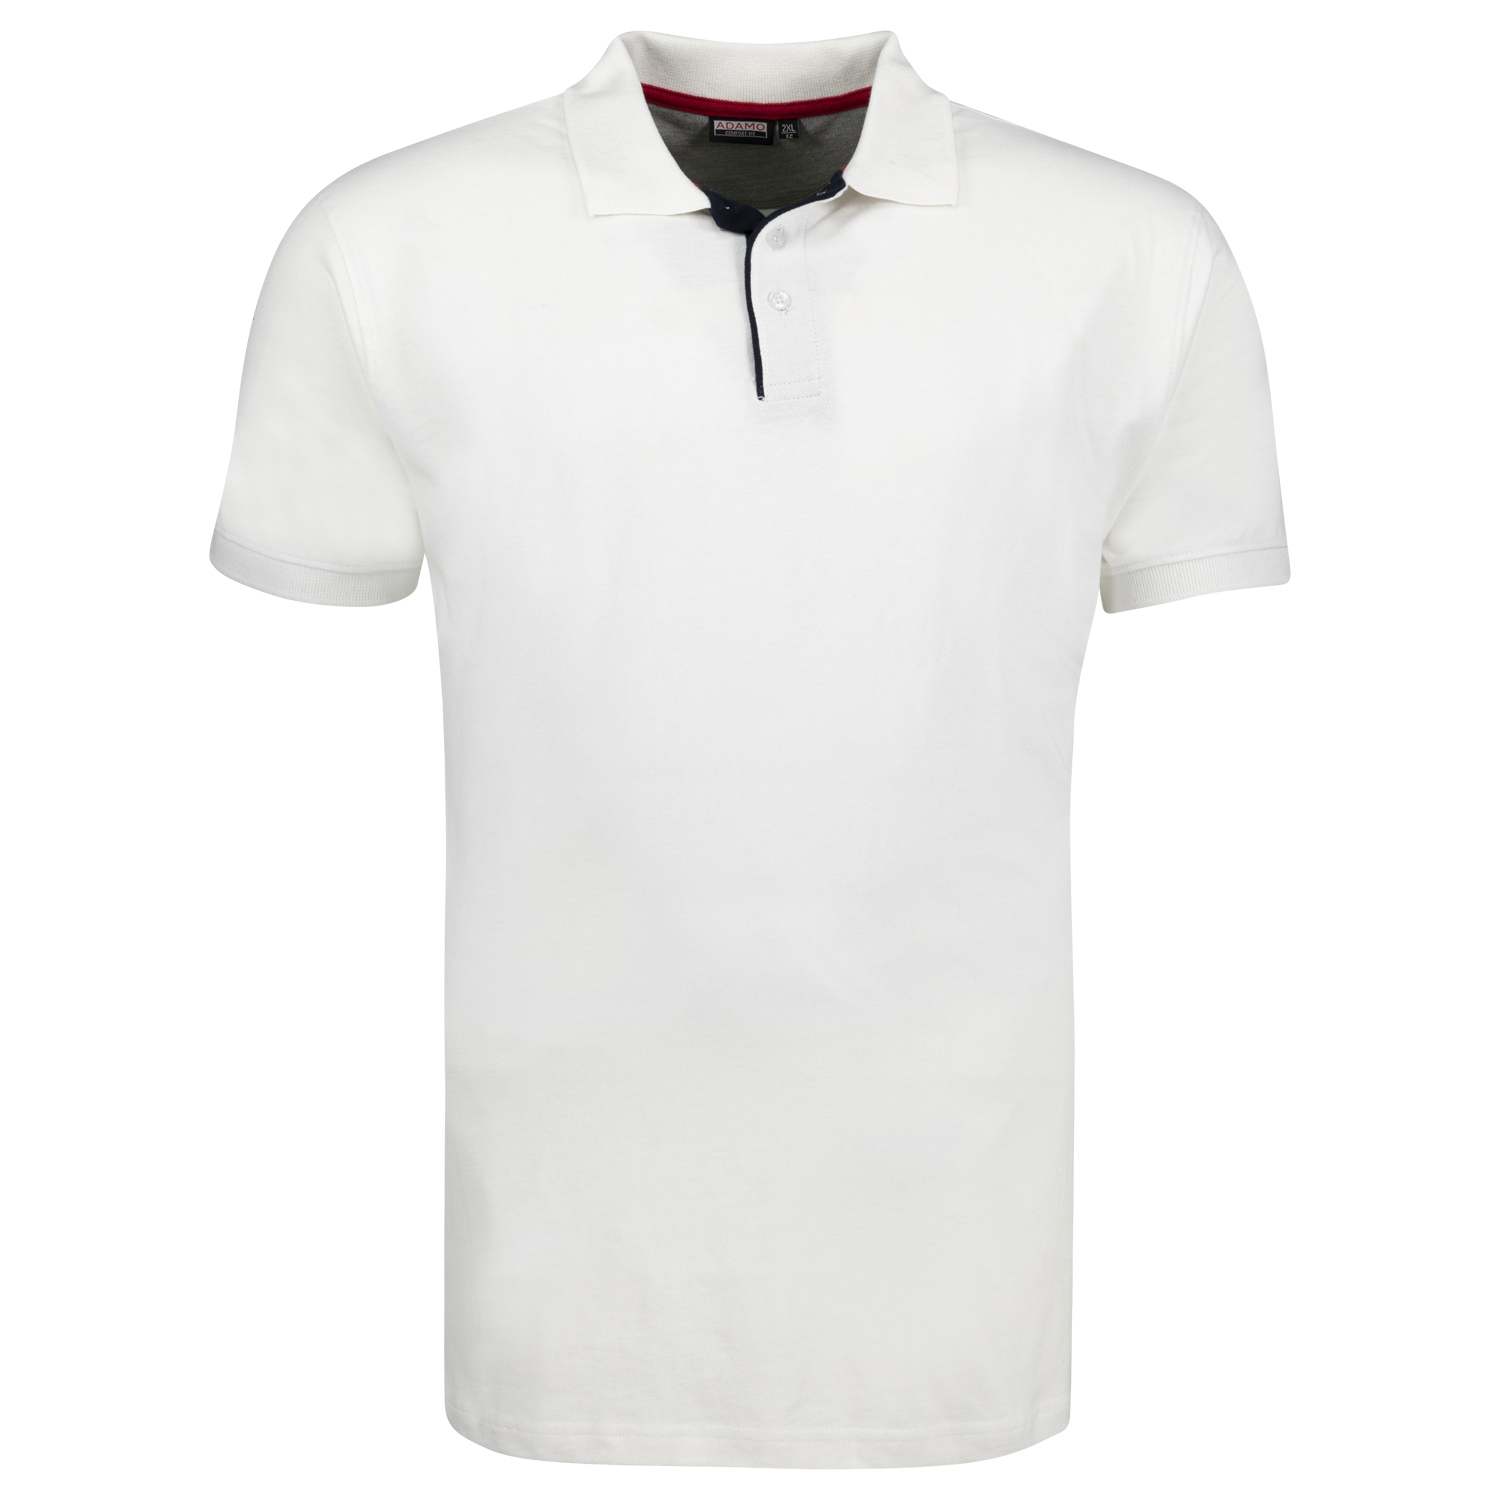 Polo shirt en blanc à manches courtes série Pablo CONFORT FIT by ADAMO en grandes tailles jusqu'au 12XL